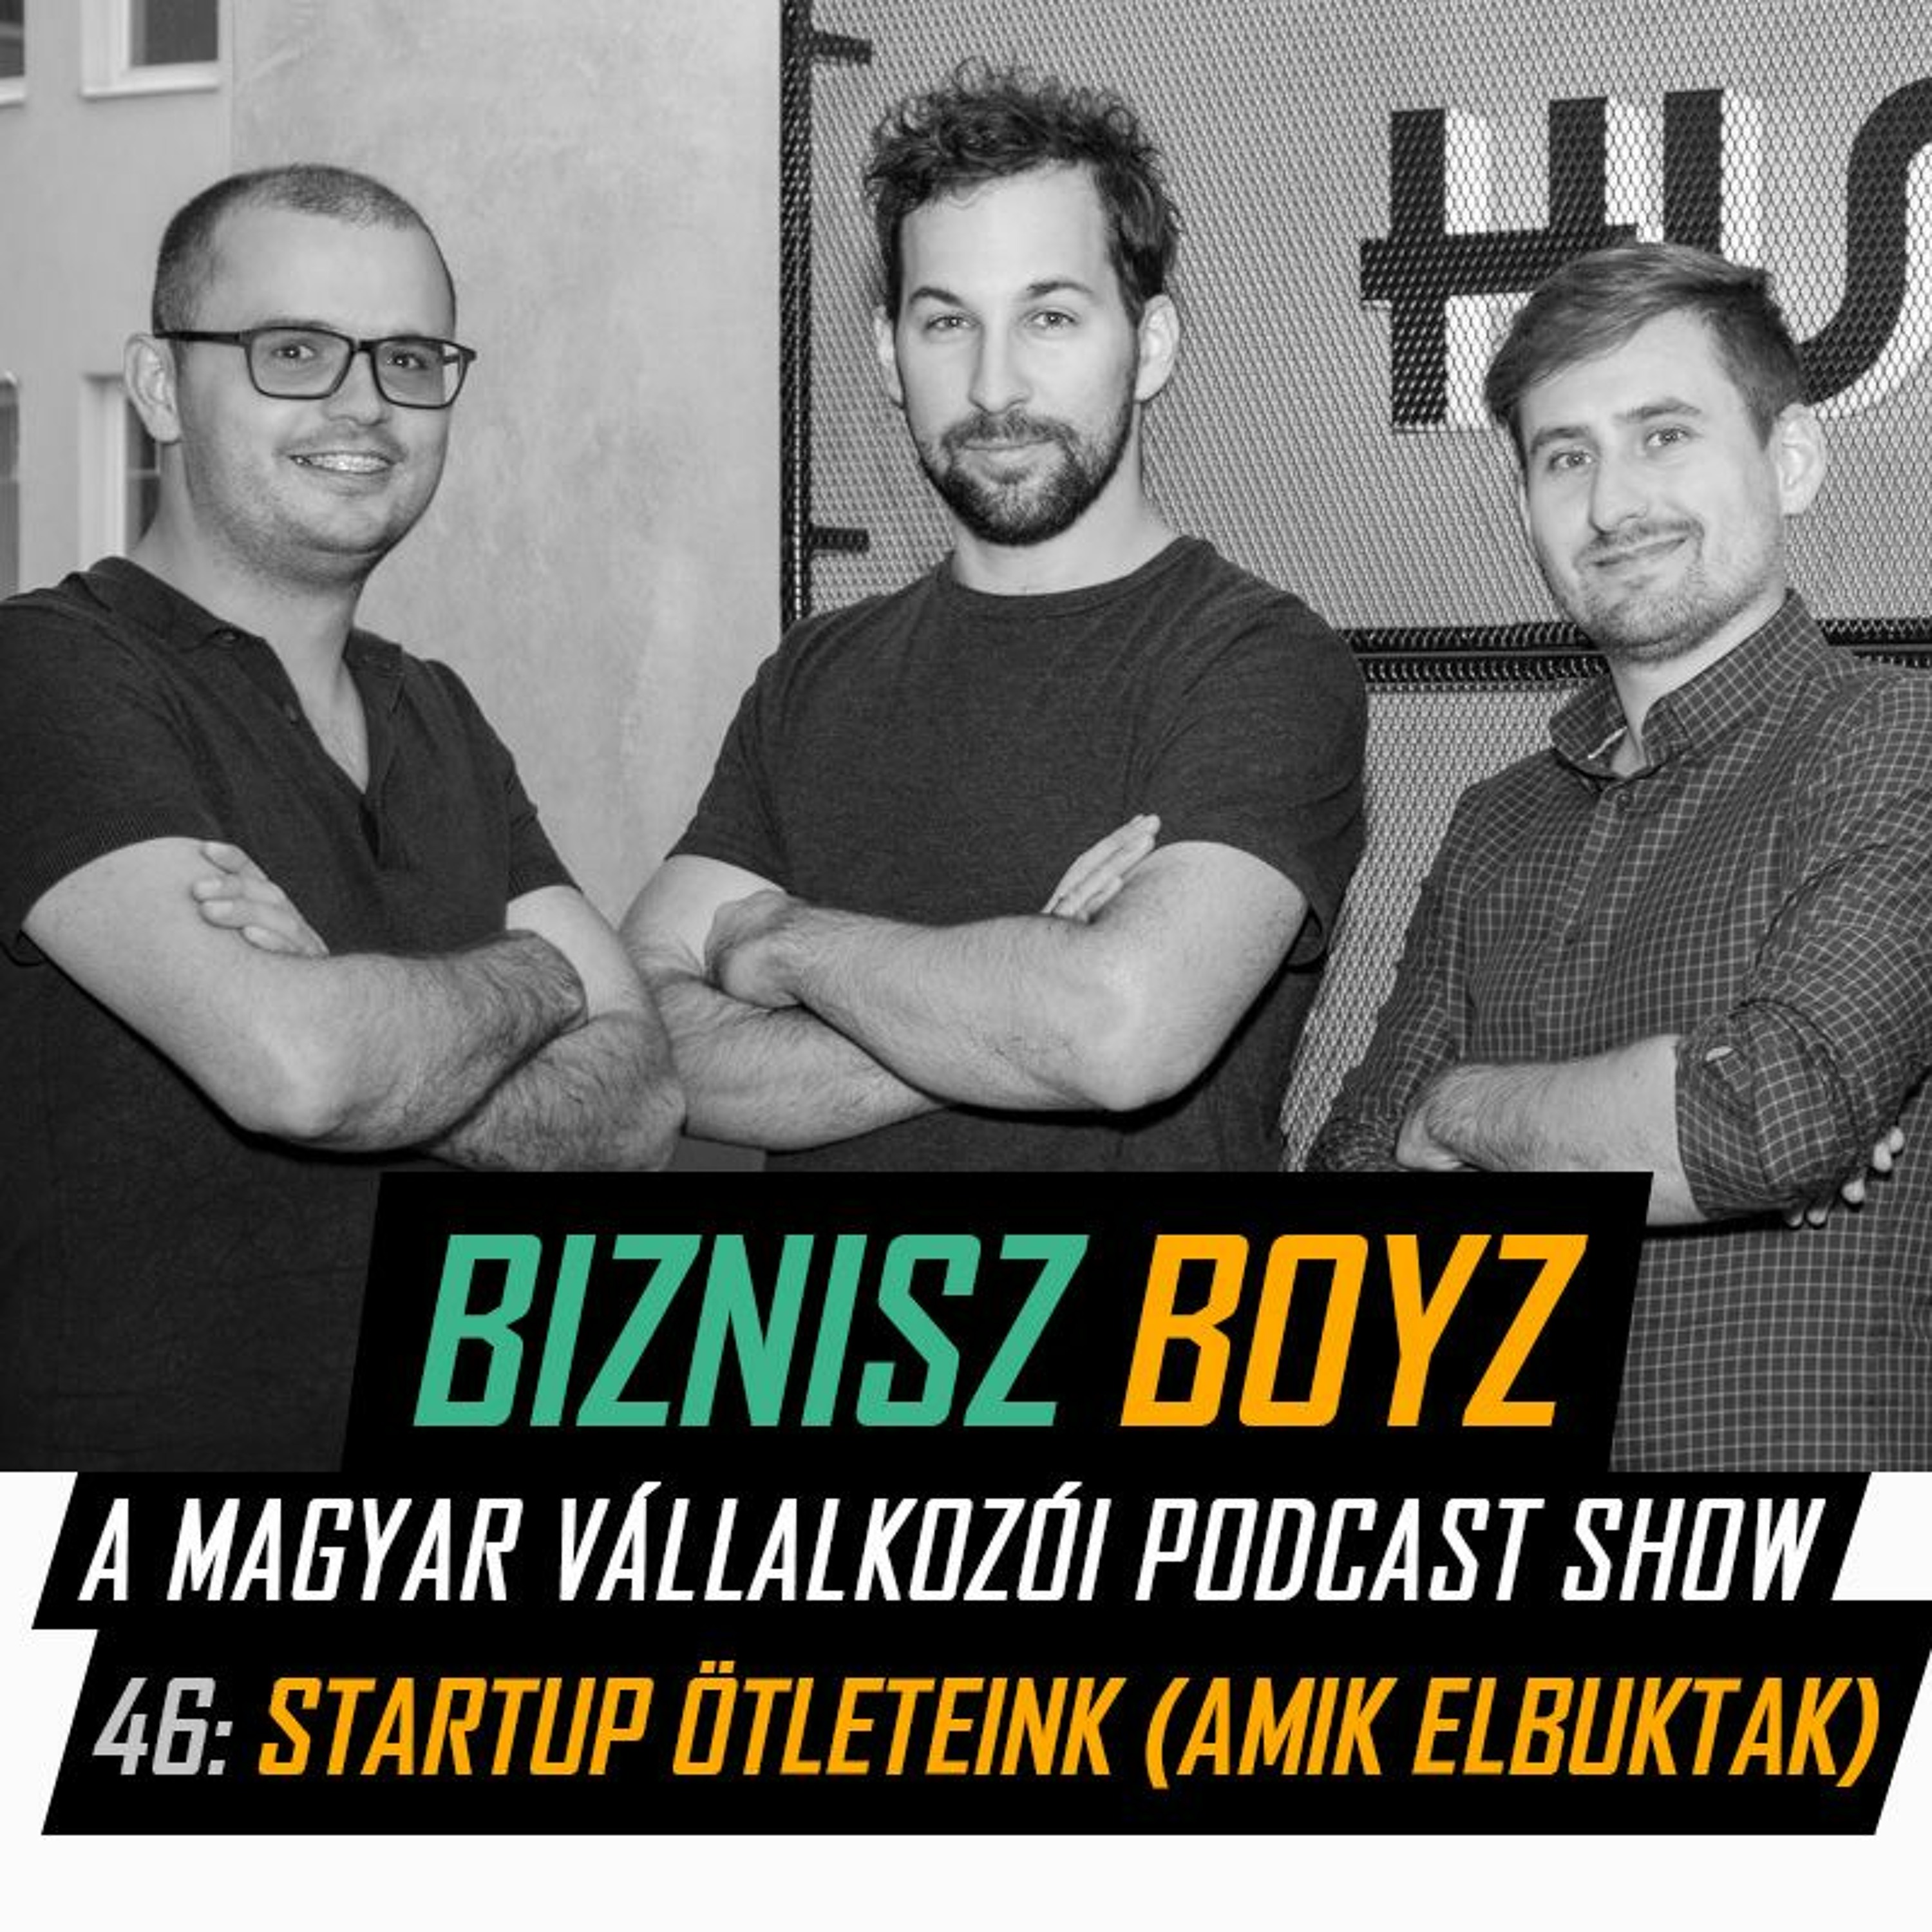 46. Startup ötleteink (amik elbuktak) | Biznisz Boyz Podcast